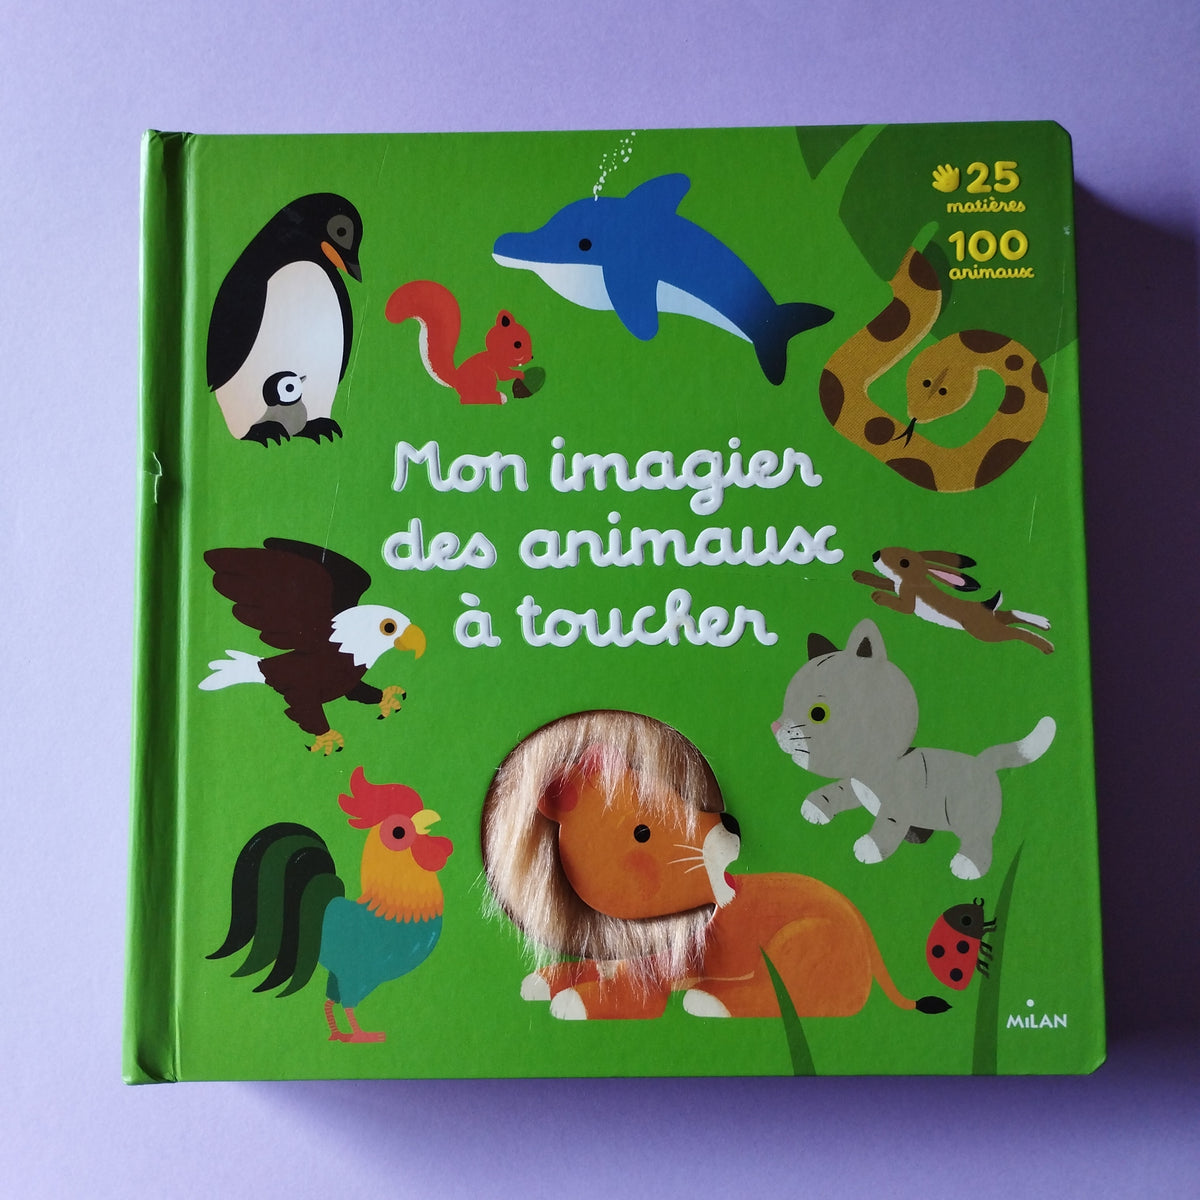 Imagier grand format. Livre pour enfants sur les animaux